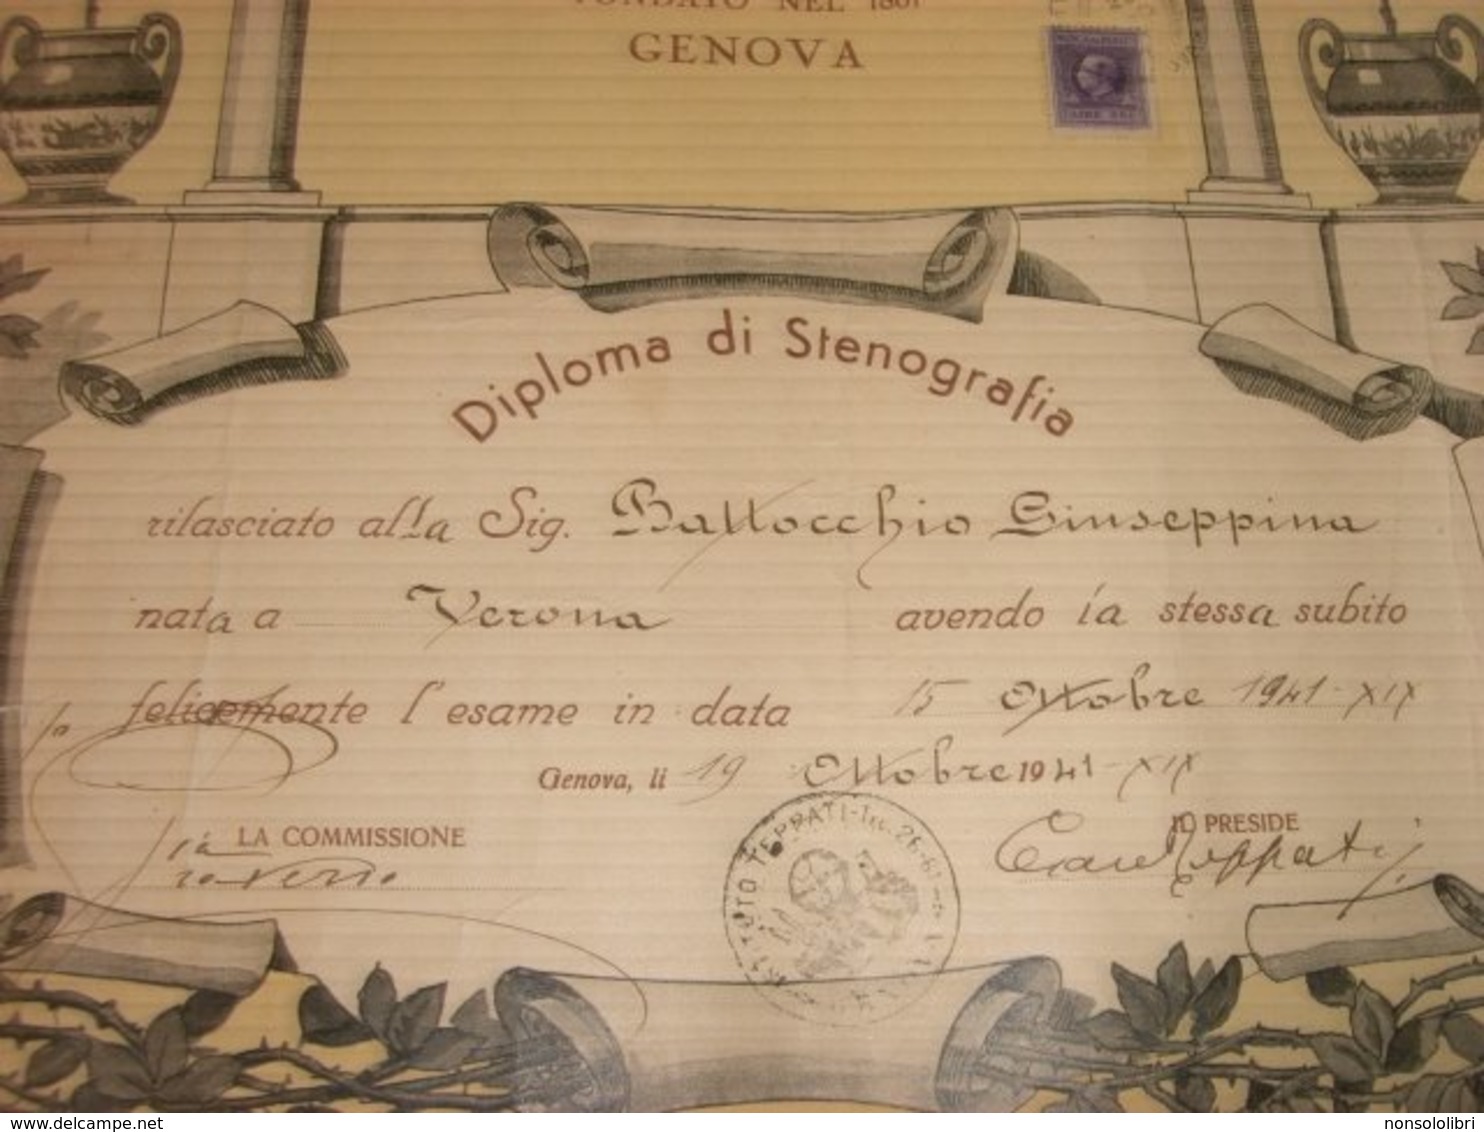 DIPLOMA STENOGRAFIA ISTITUTO TEPPATI GENOVA 1941 - Diplomi E Pagelle